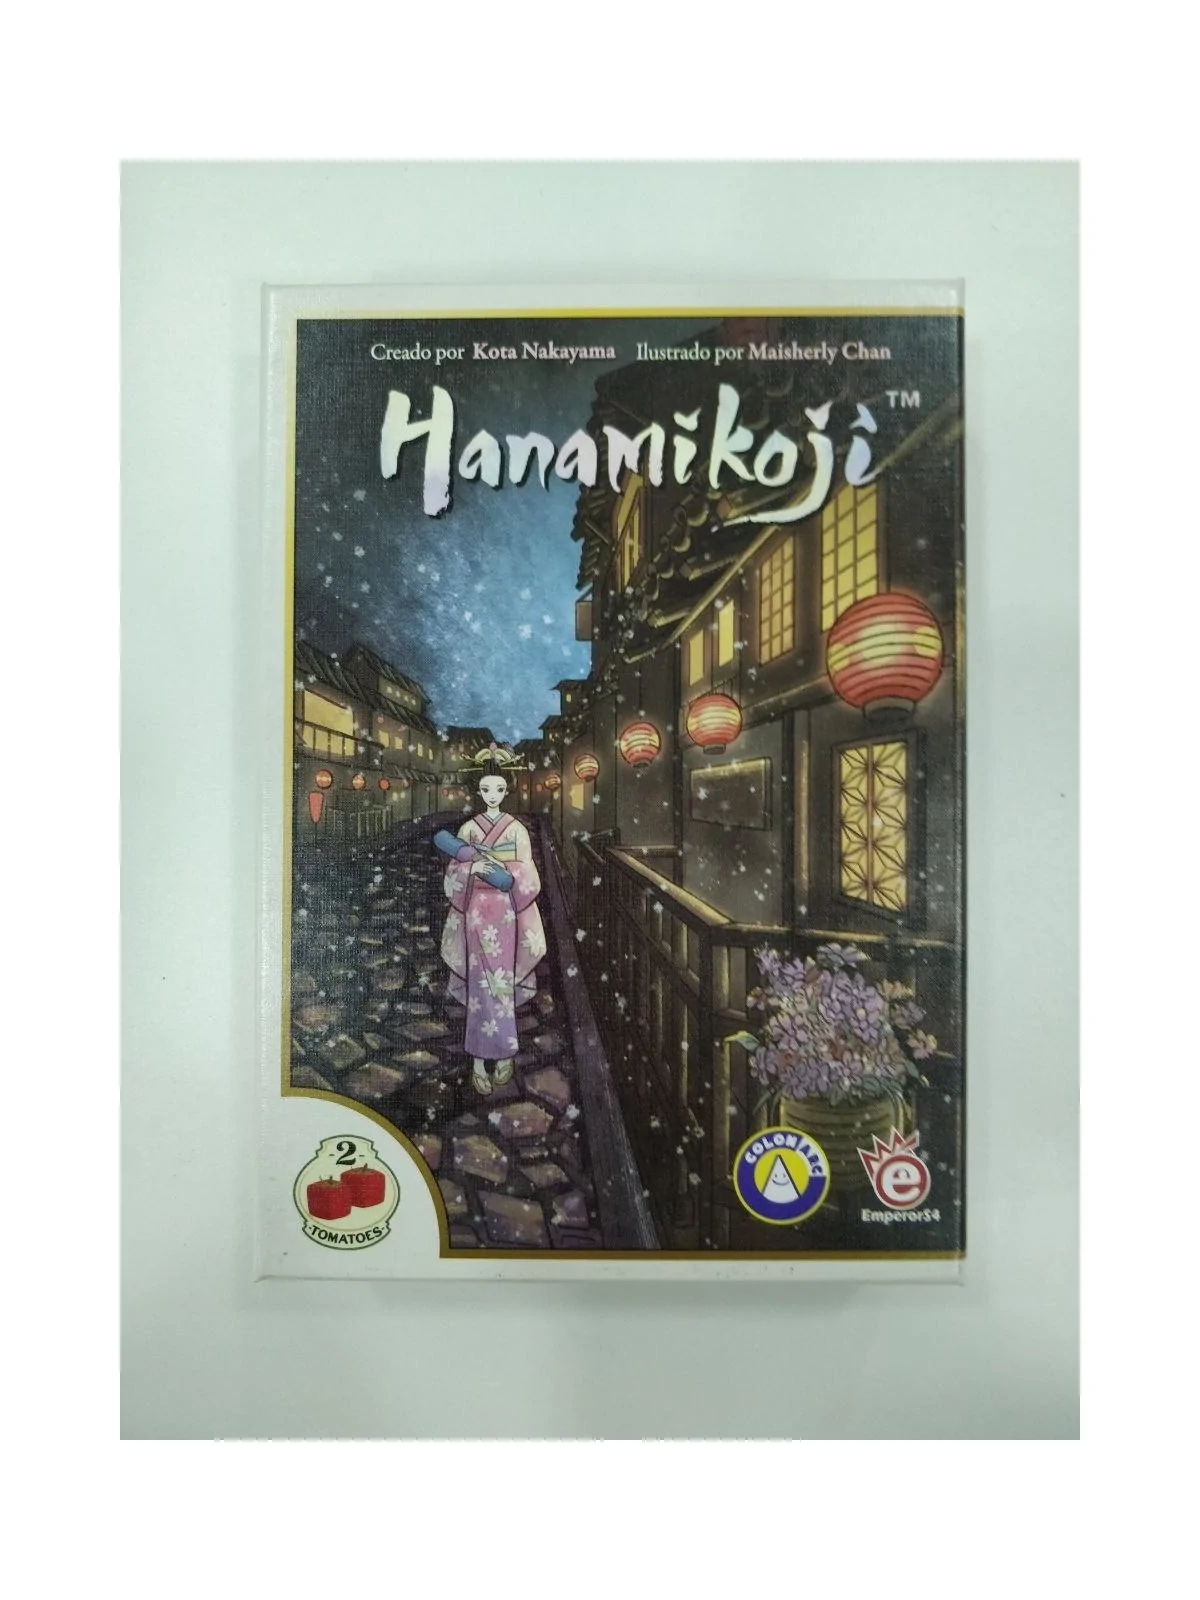 Comprar Hanamikoji [SEGUNDA MANO] barato al mejor precio 10,00 € de Tw